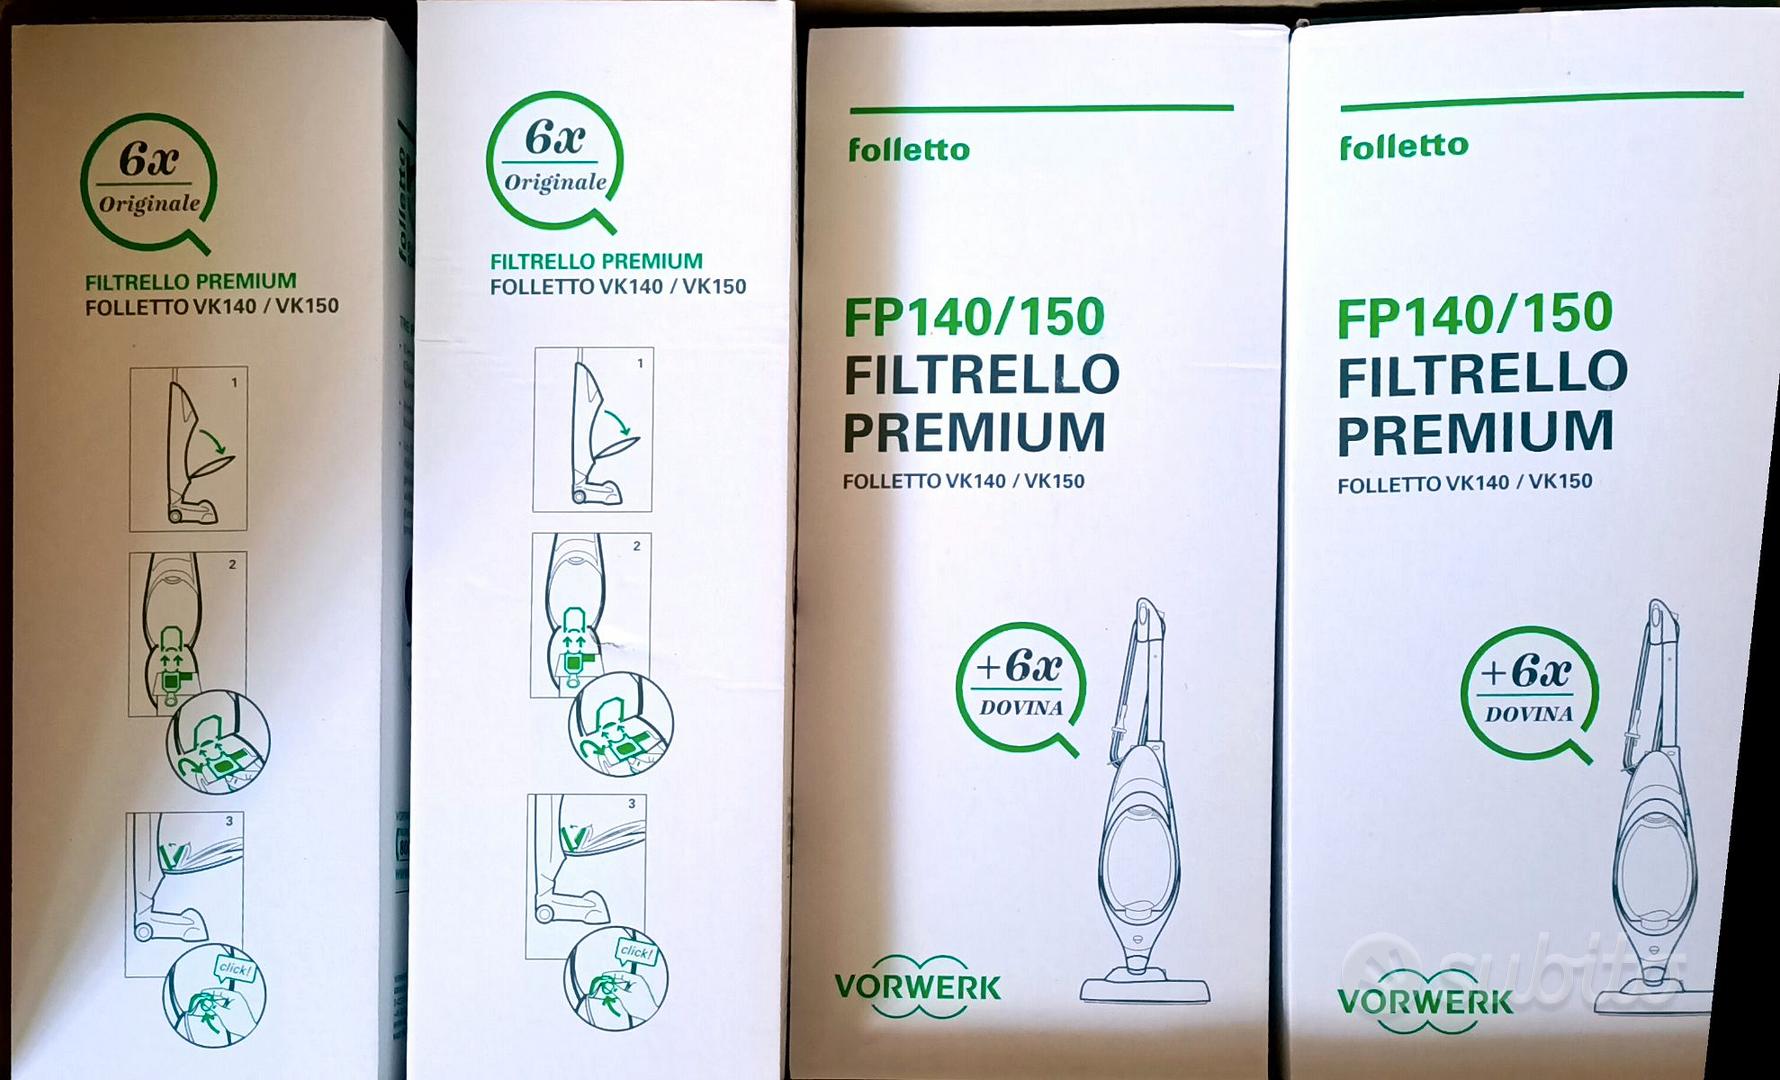 Folletto filtrello premium fp 140/150 - Elettrodomestici In vendita a  Potenza